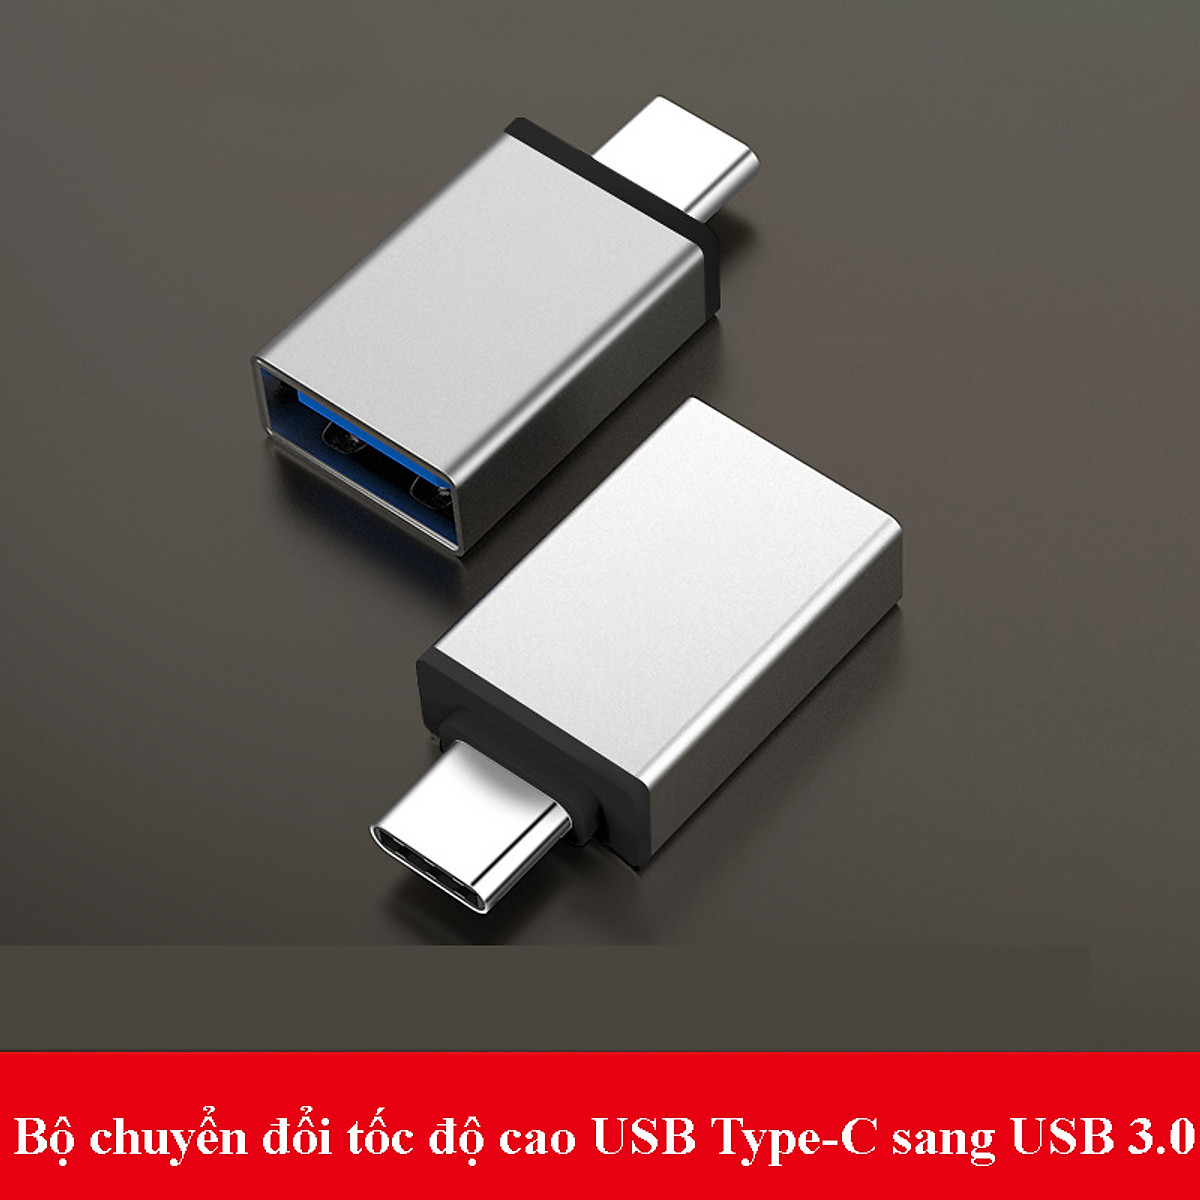 HUB Type C và HUB USB 3.0 - Cổng chuyển đổi HUB USB Type-C - USB 3.0 CV to HDMI, VGA, USB 3.0, SD, TF, RJ45, PD Type-C dành cho Macbook, SamSung Dex, HP, Acer, Asus - Hàng chính hãng